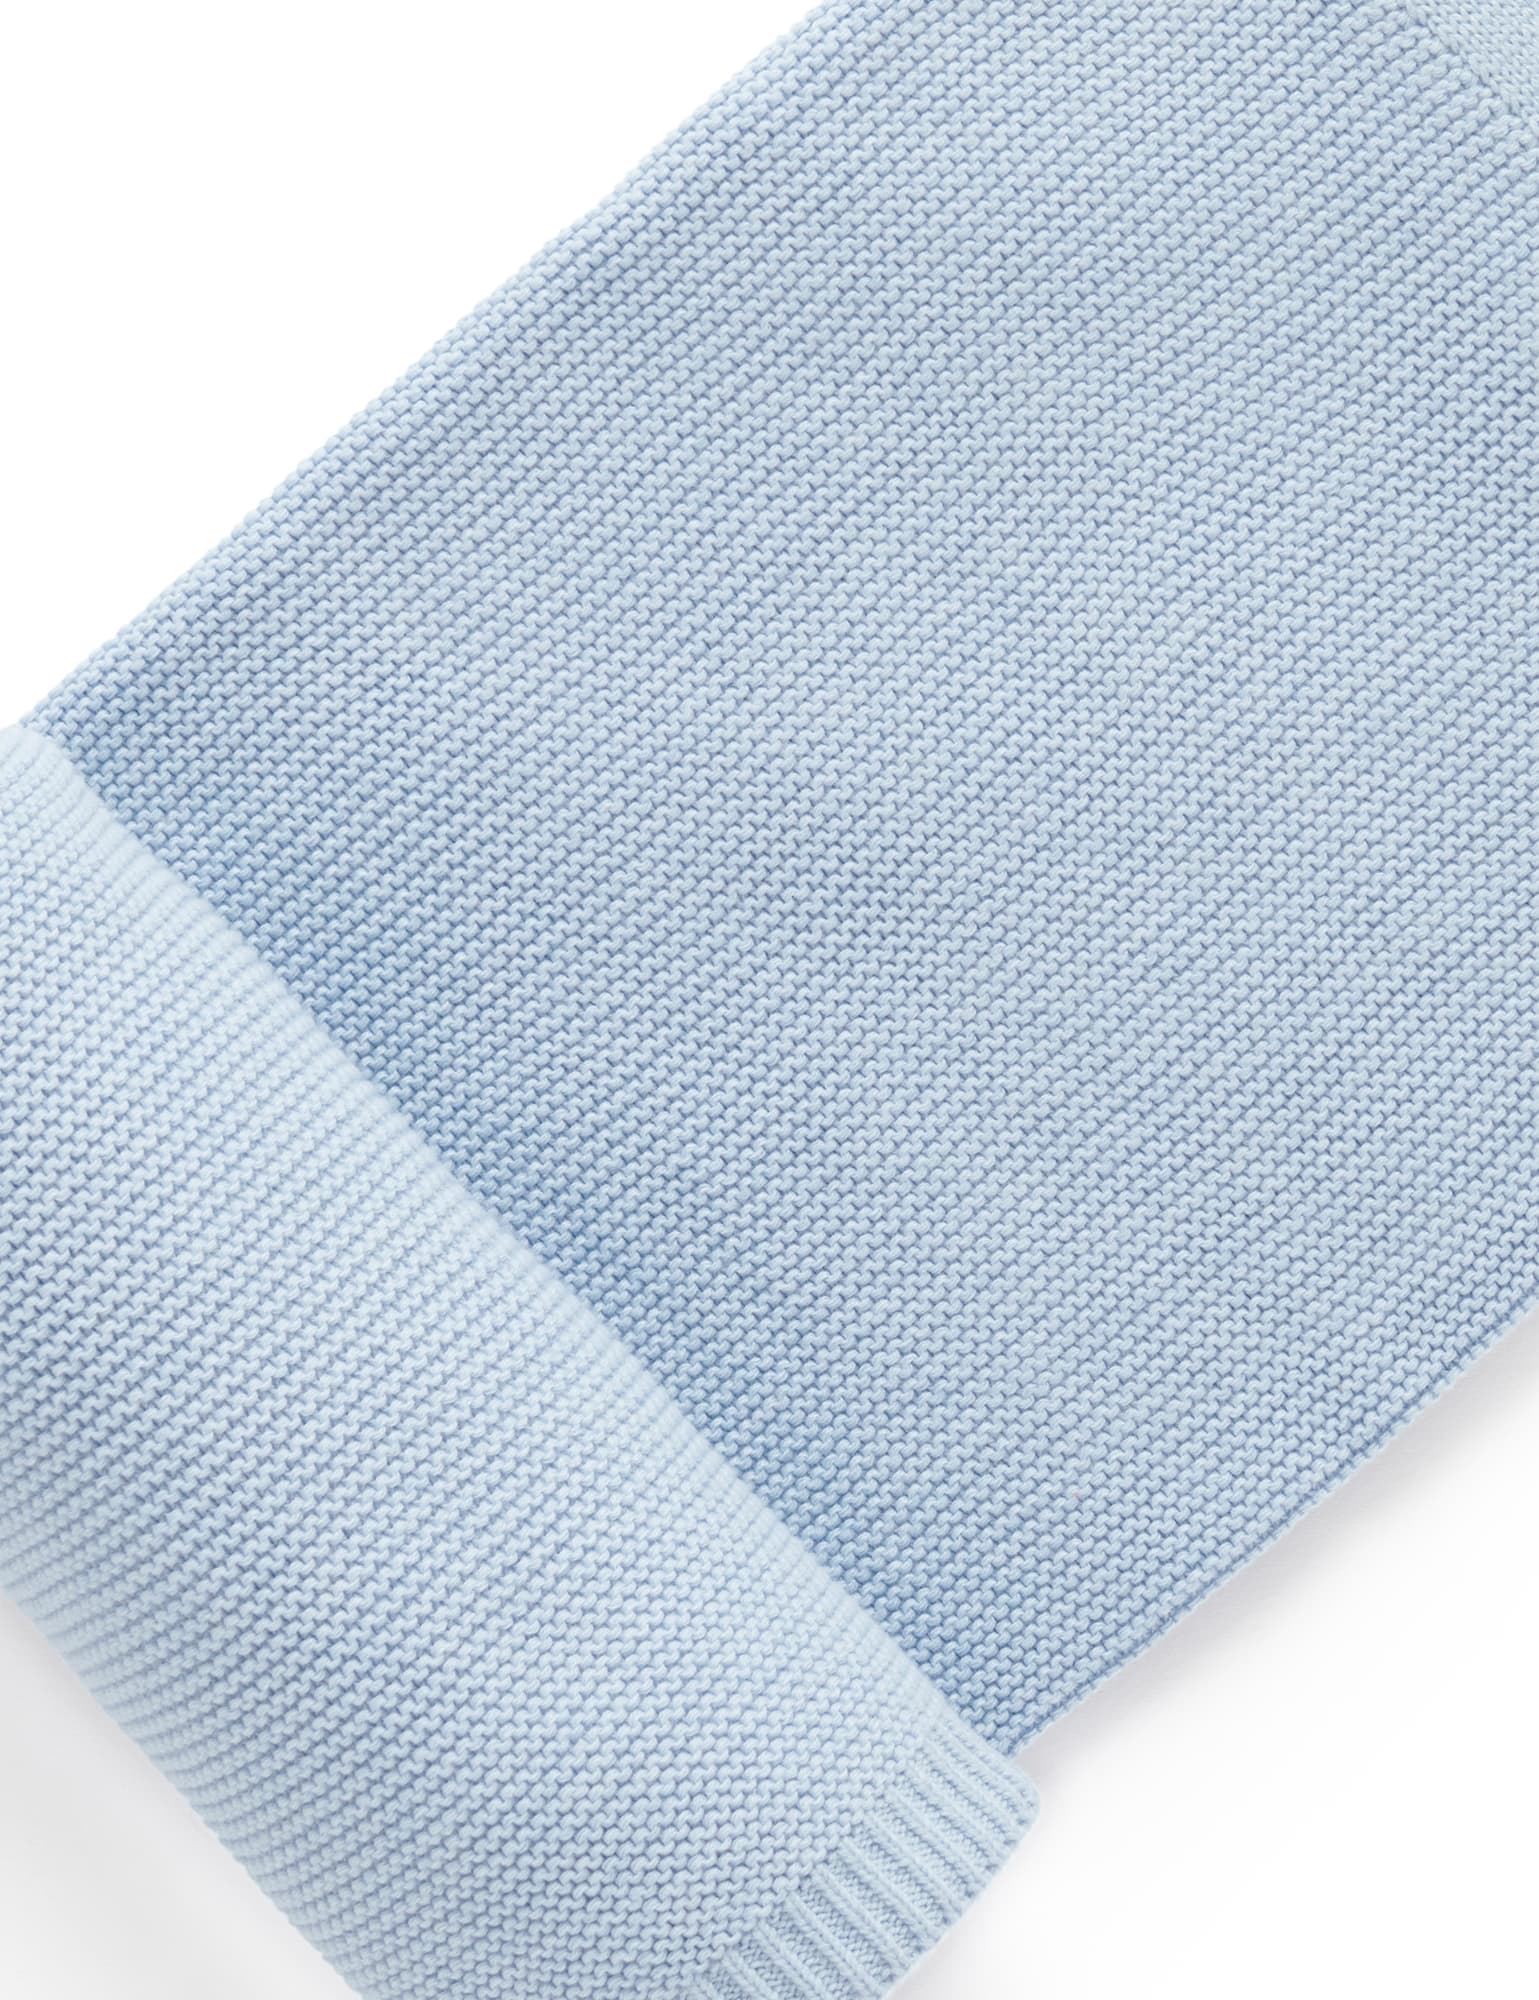 Purebaby Textured Blanket - Blue